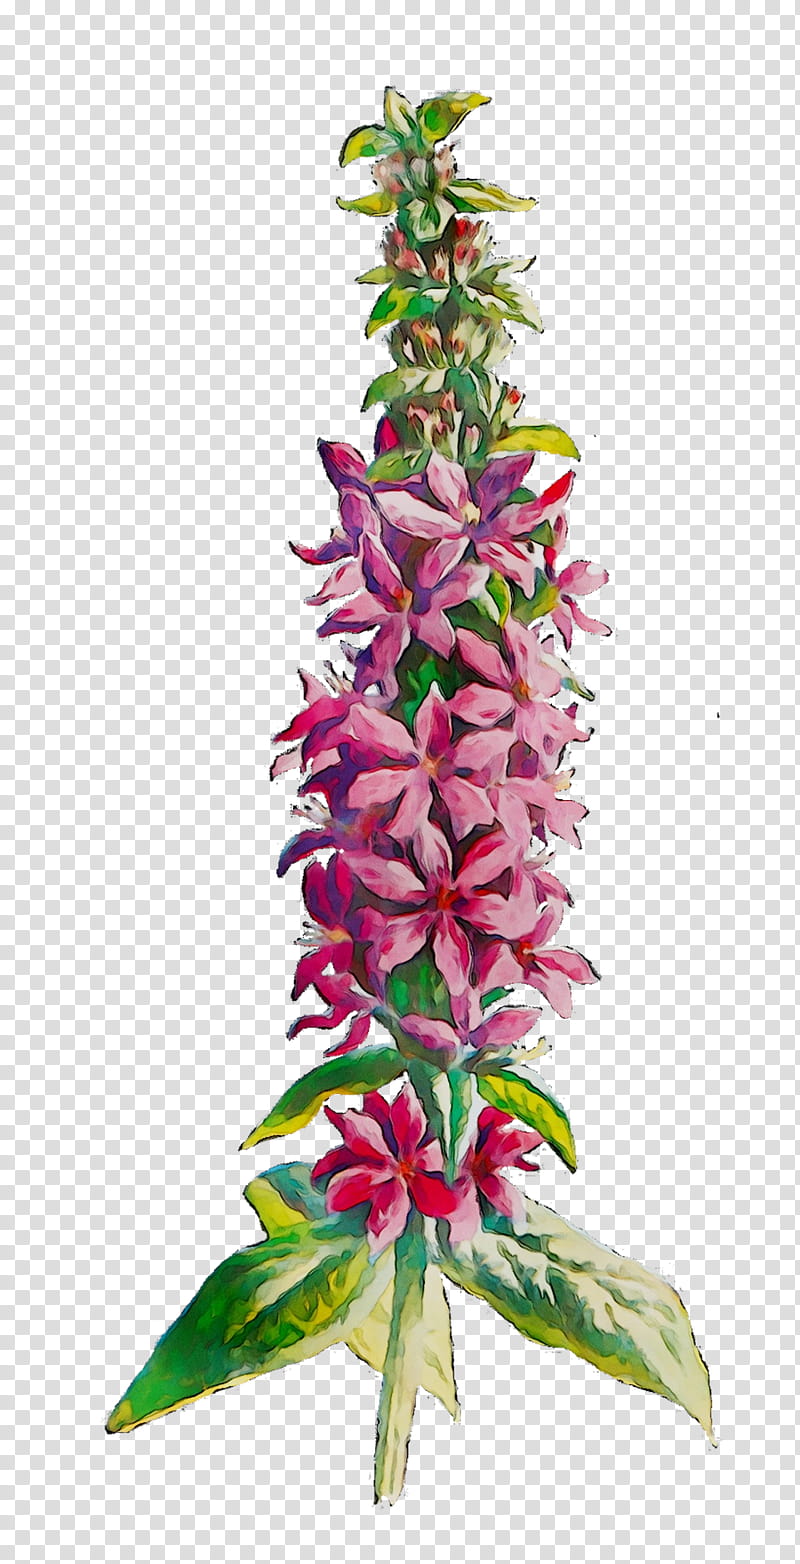 Pink Flower, Plant Stem, Plants, Aquarium Decor, Terrestrial Plant, Lemon Beebalm, Pedicel, Lobelia transparent background PNG clipart